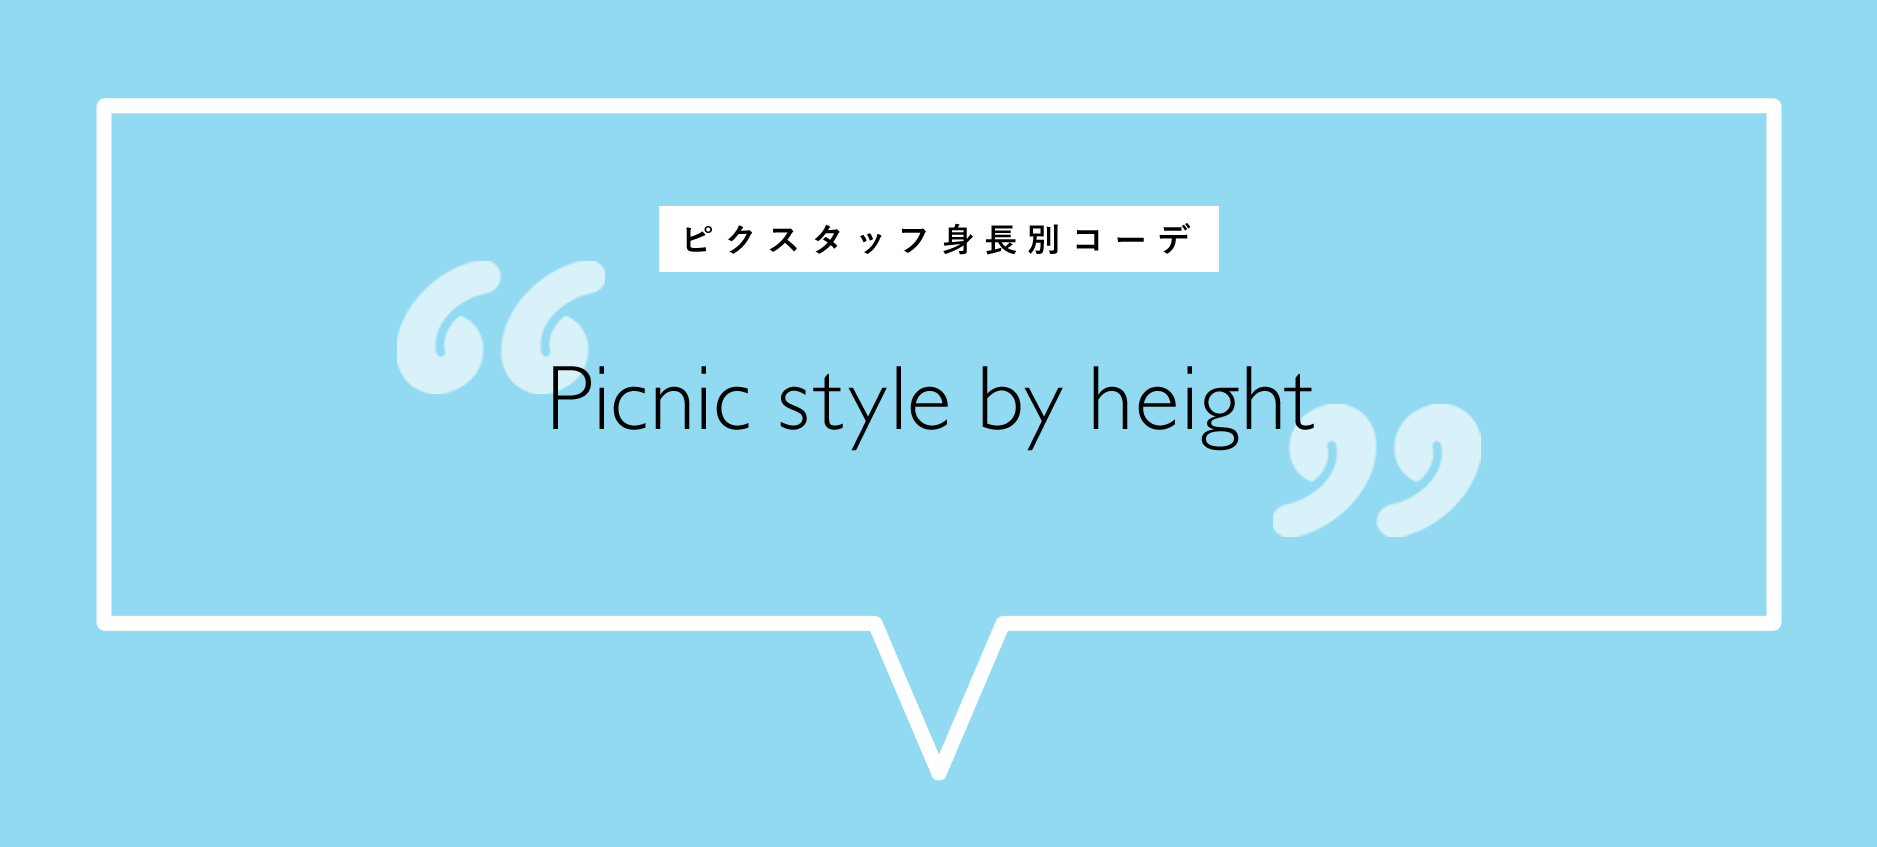 ピクスタッフ身長別コーデ Picnic style by height